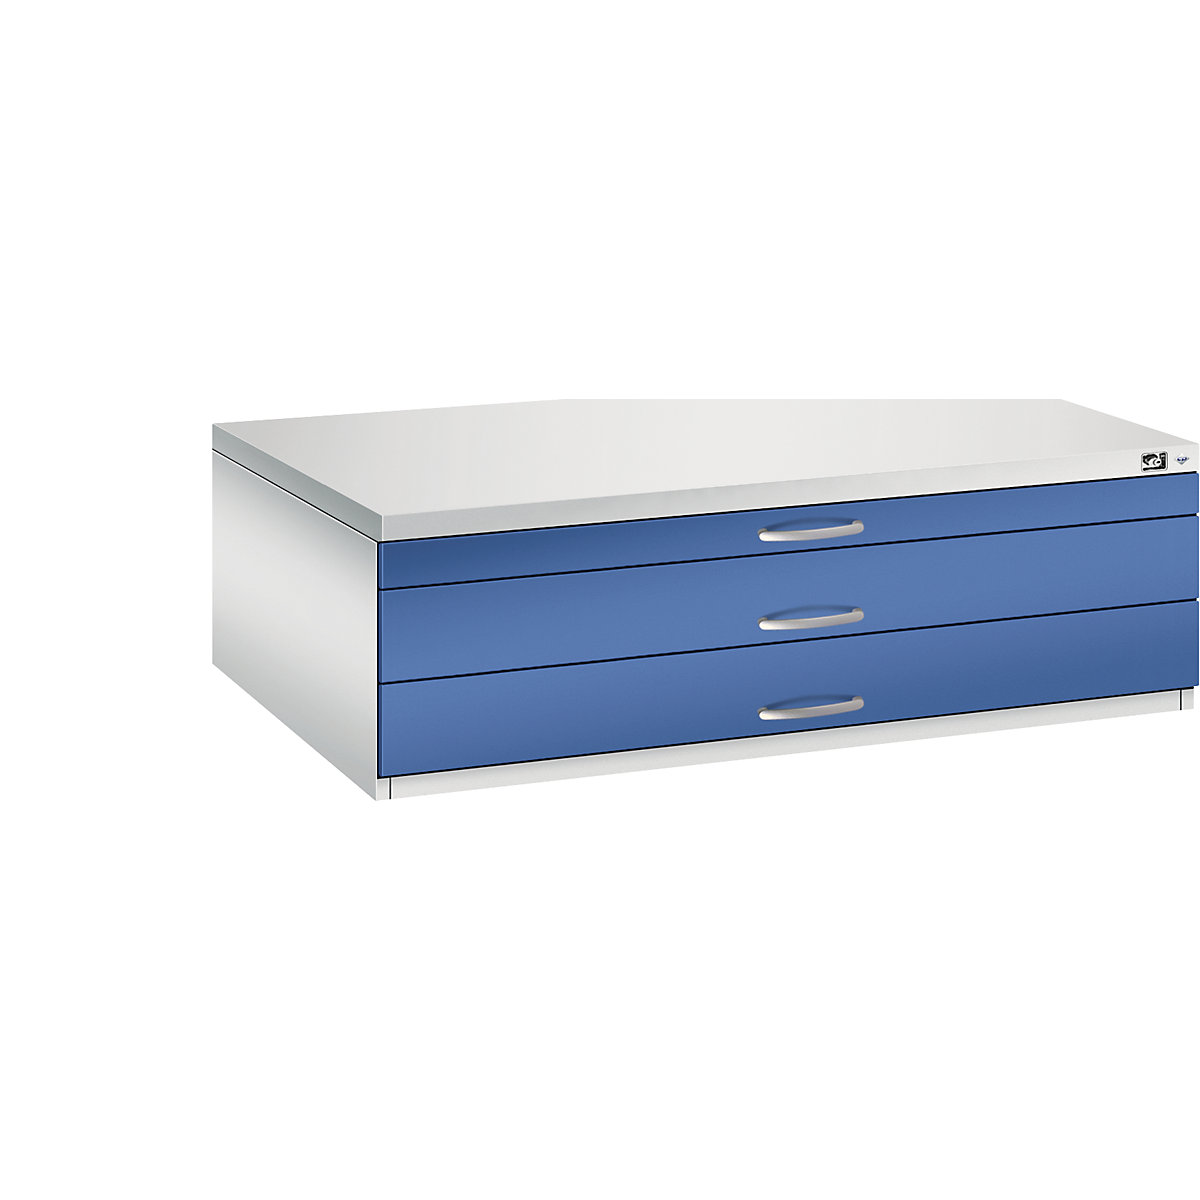 Archivio per disegni – C+P, UNI A0, 3 cassetti, altezza 420 mm, grigio chiaro / blu genziana-11